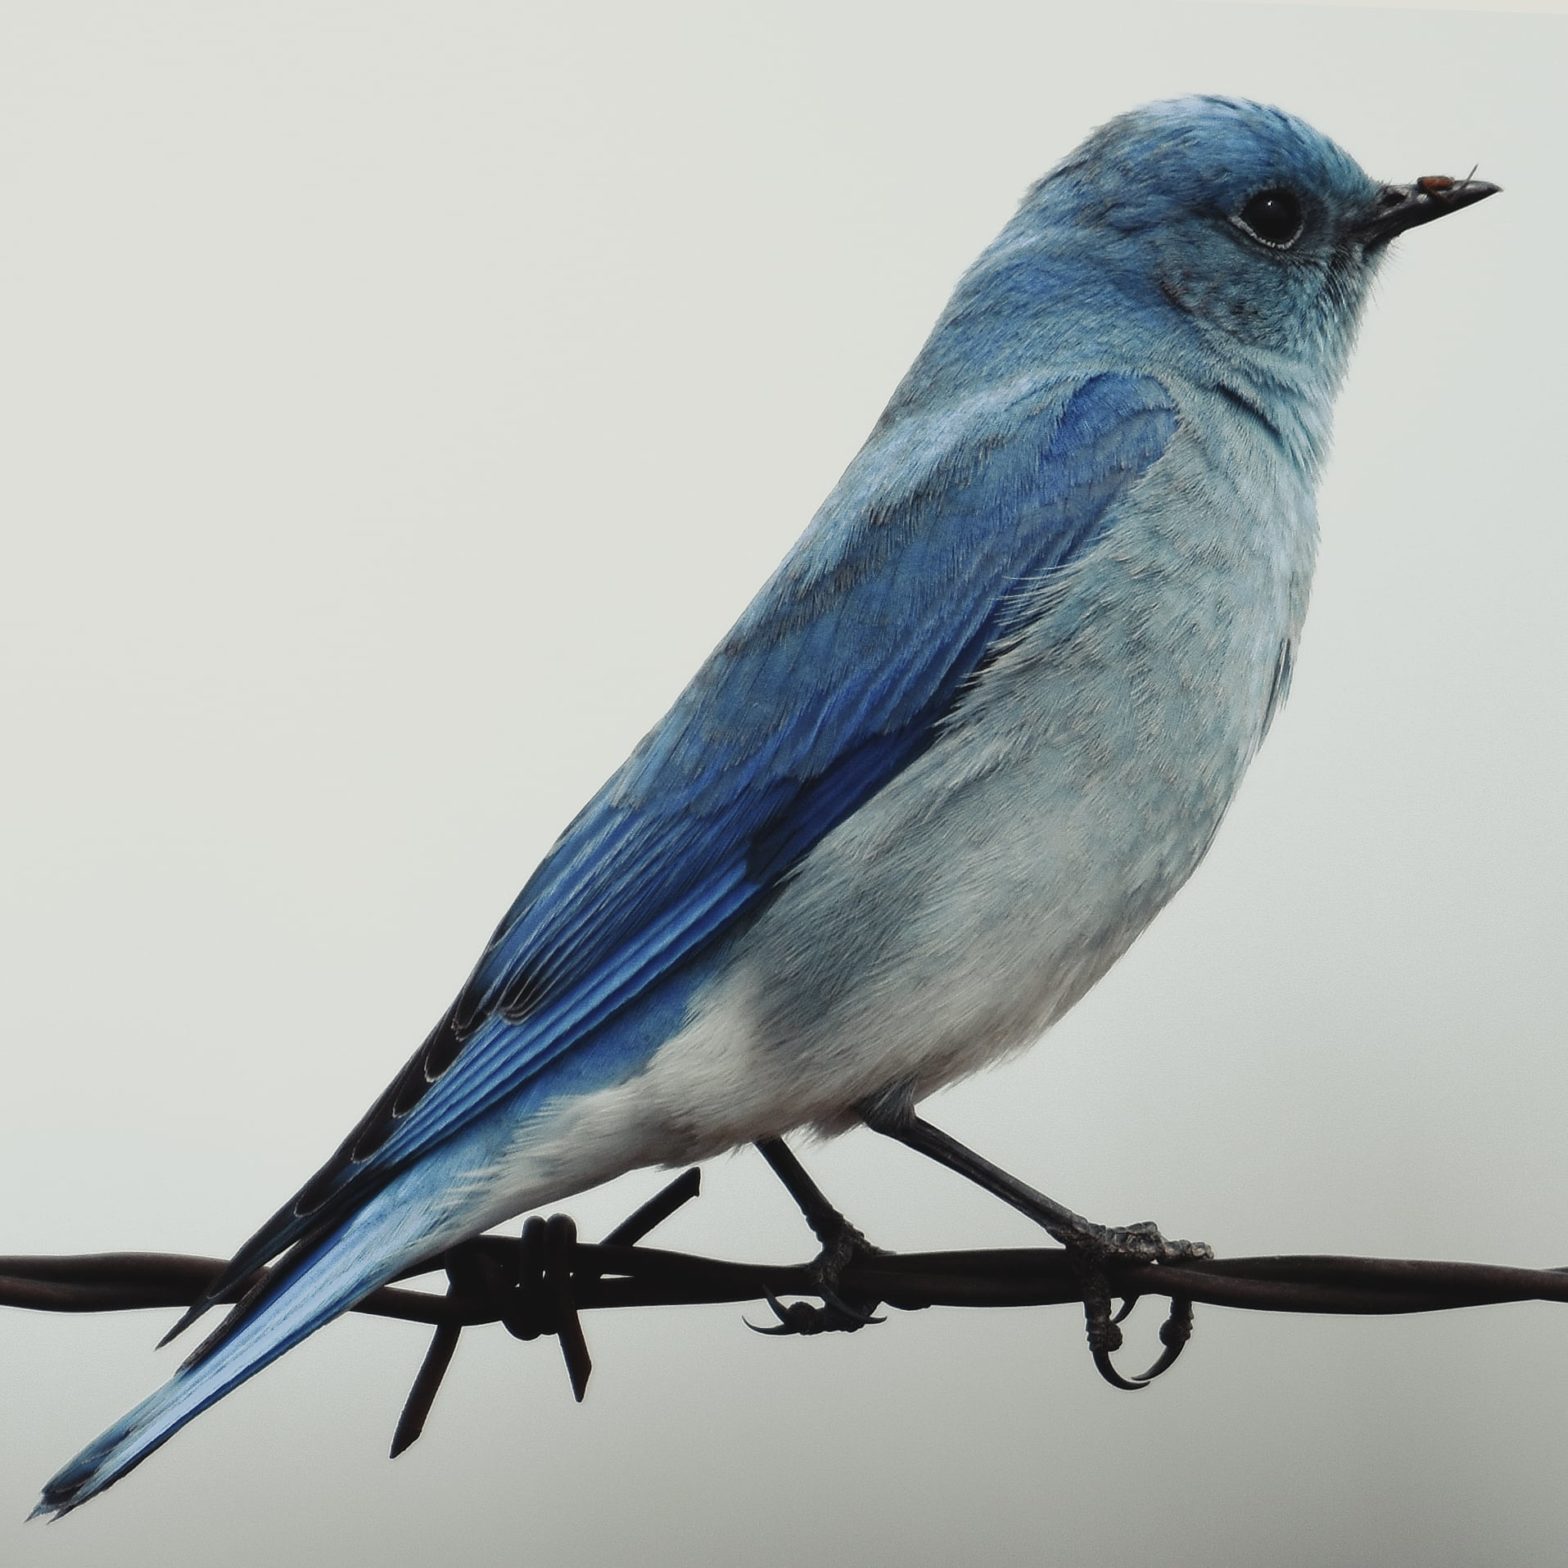 Un oiseau bleu posé sur du fil barbelé, dans une ambiance blafarde.